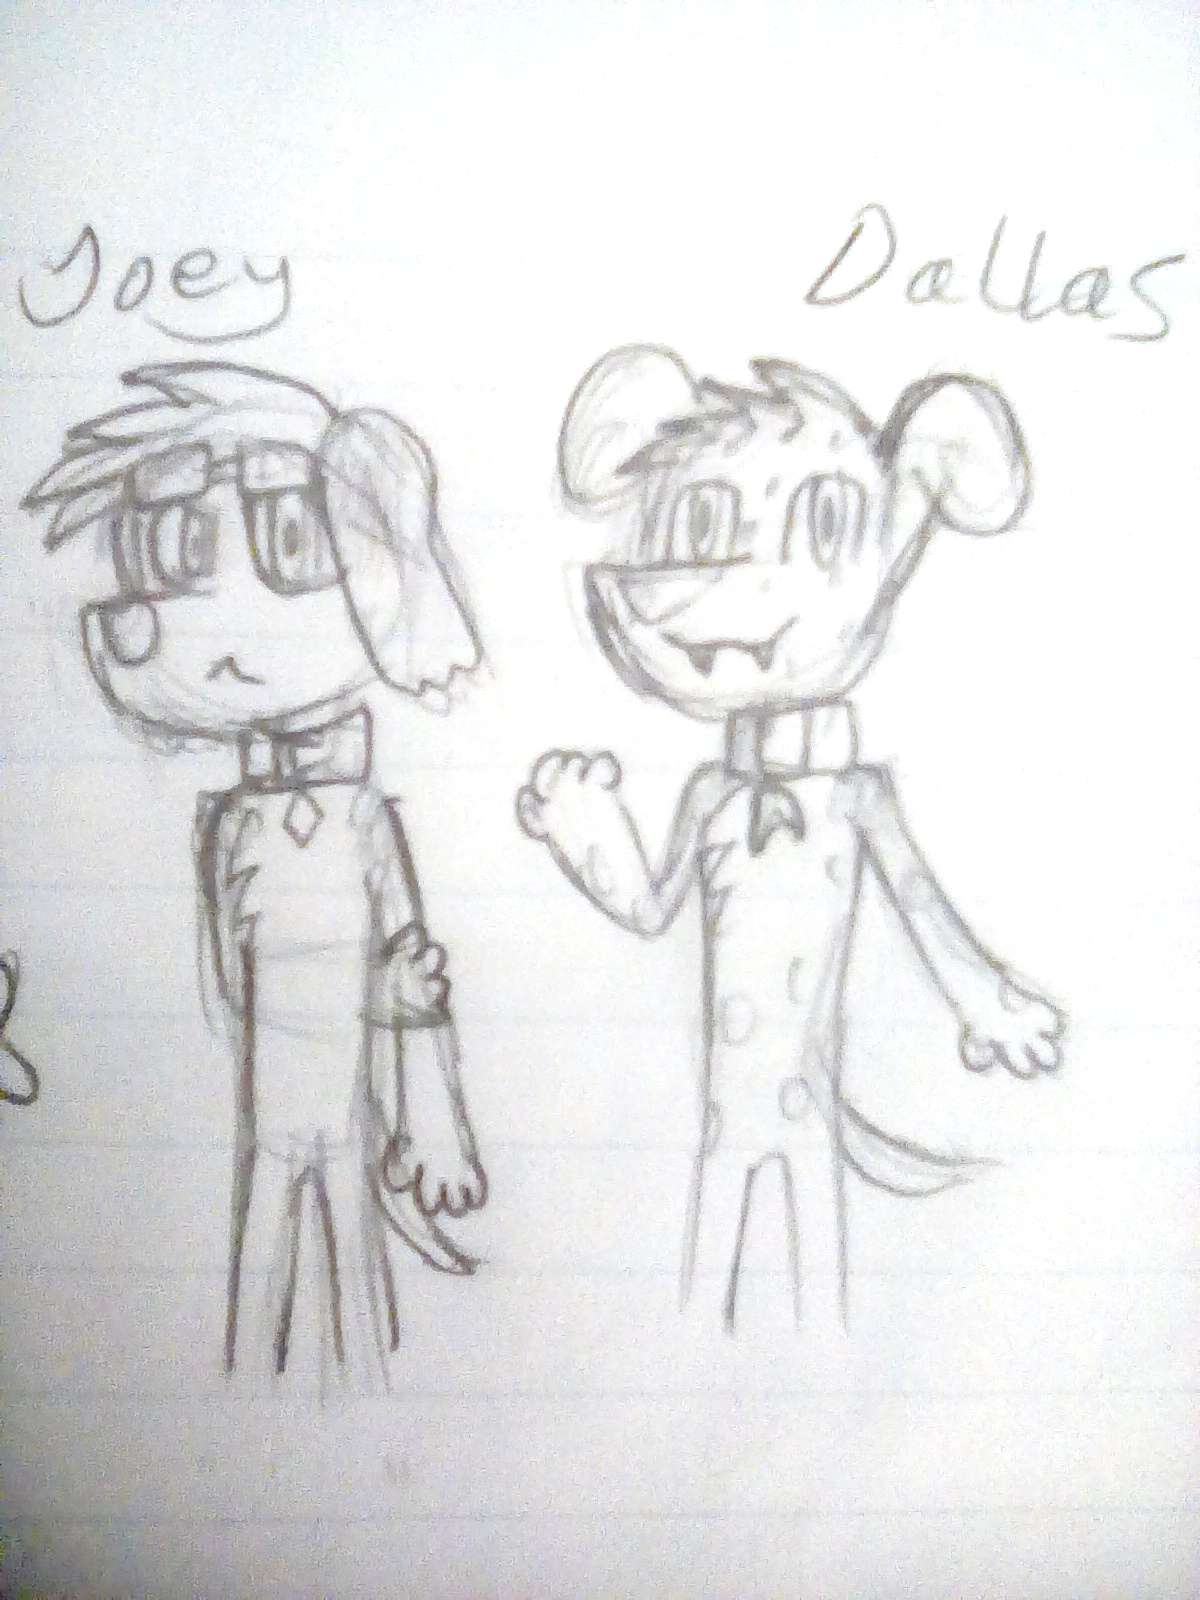 March Sketch 3 & 4 - Joey & Dallas.jpg